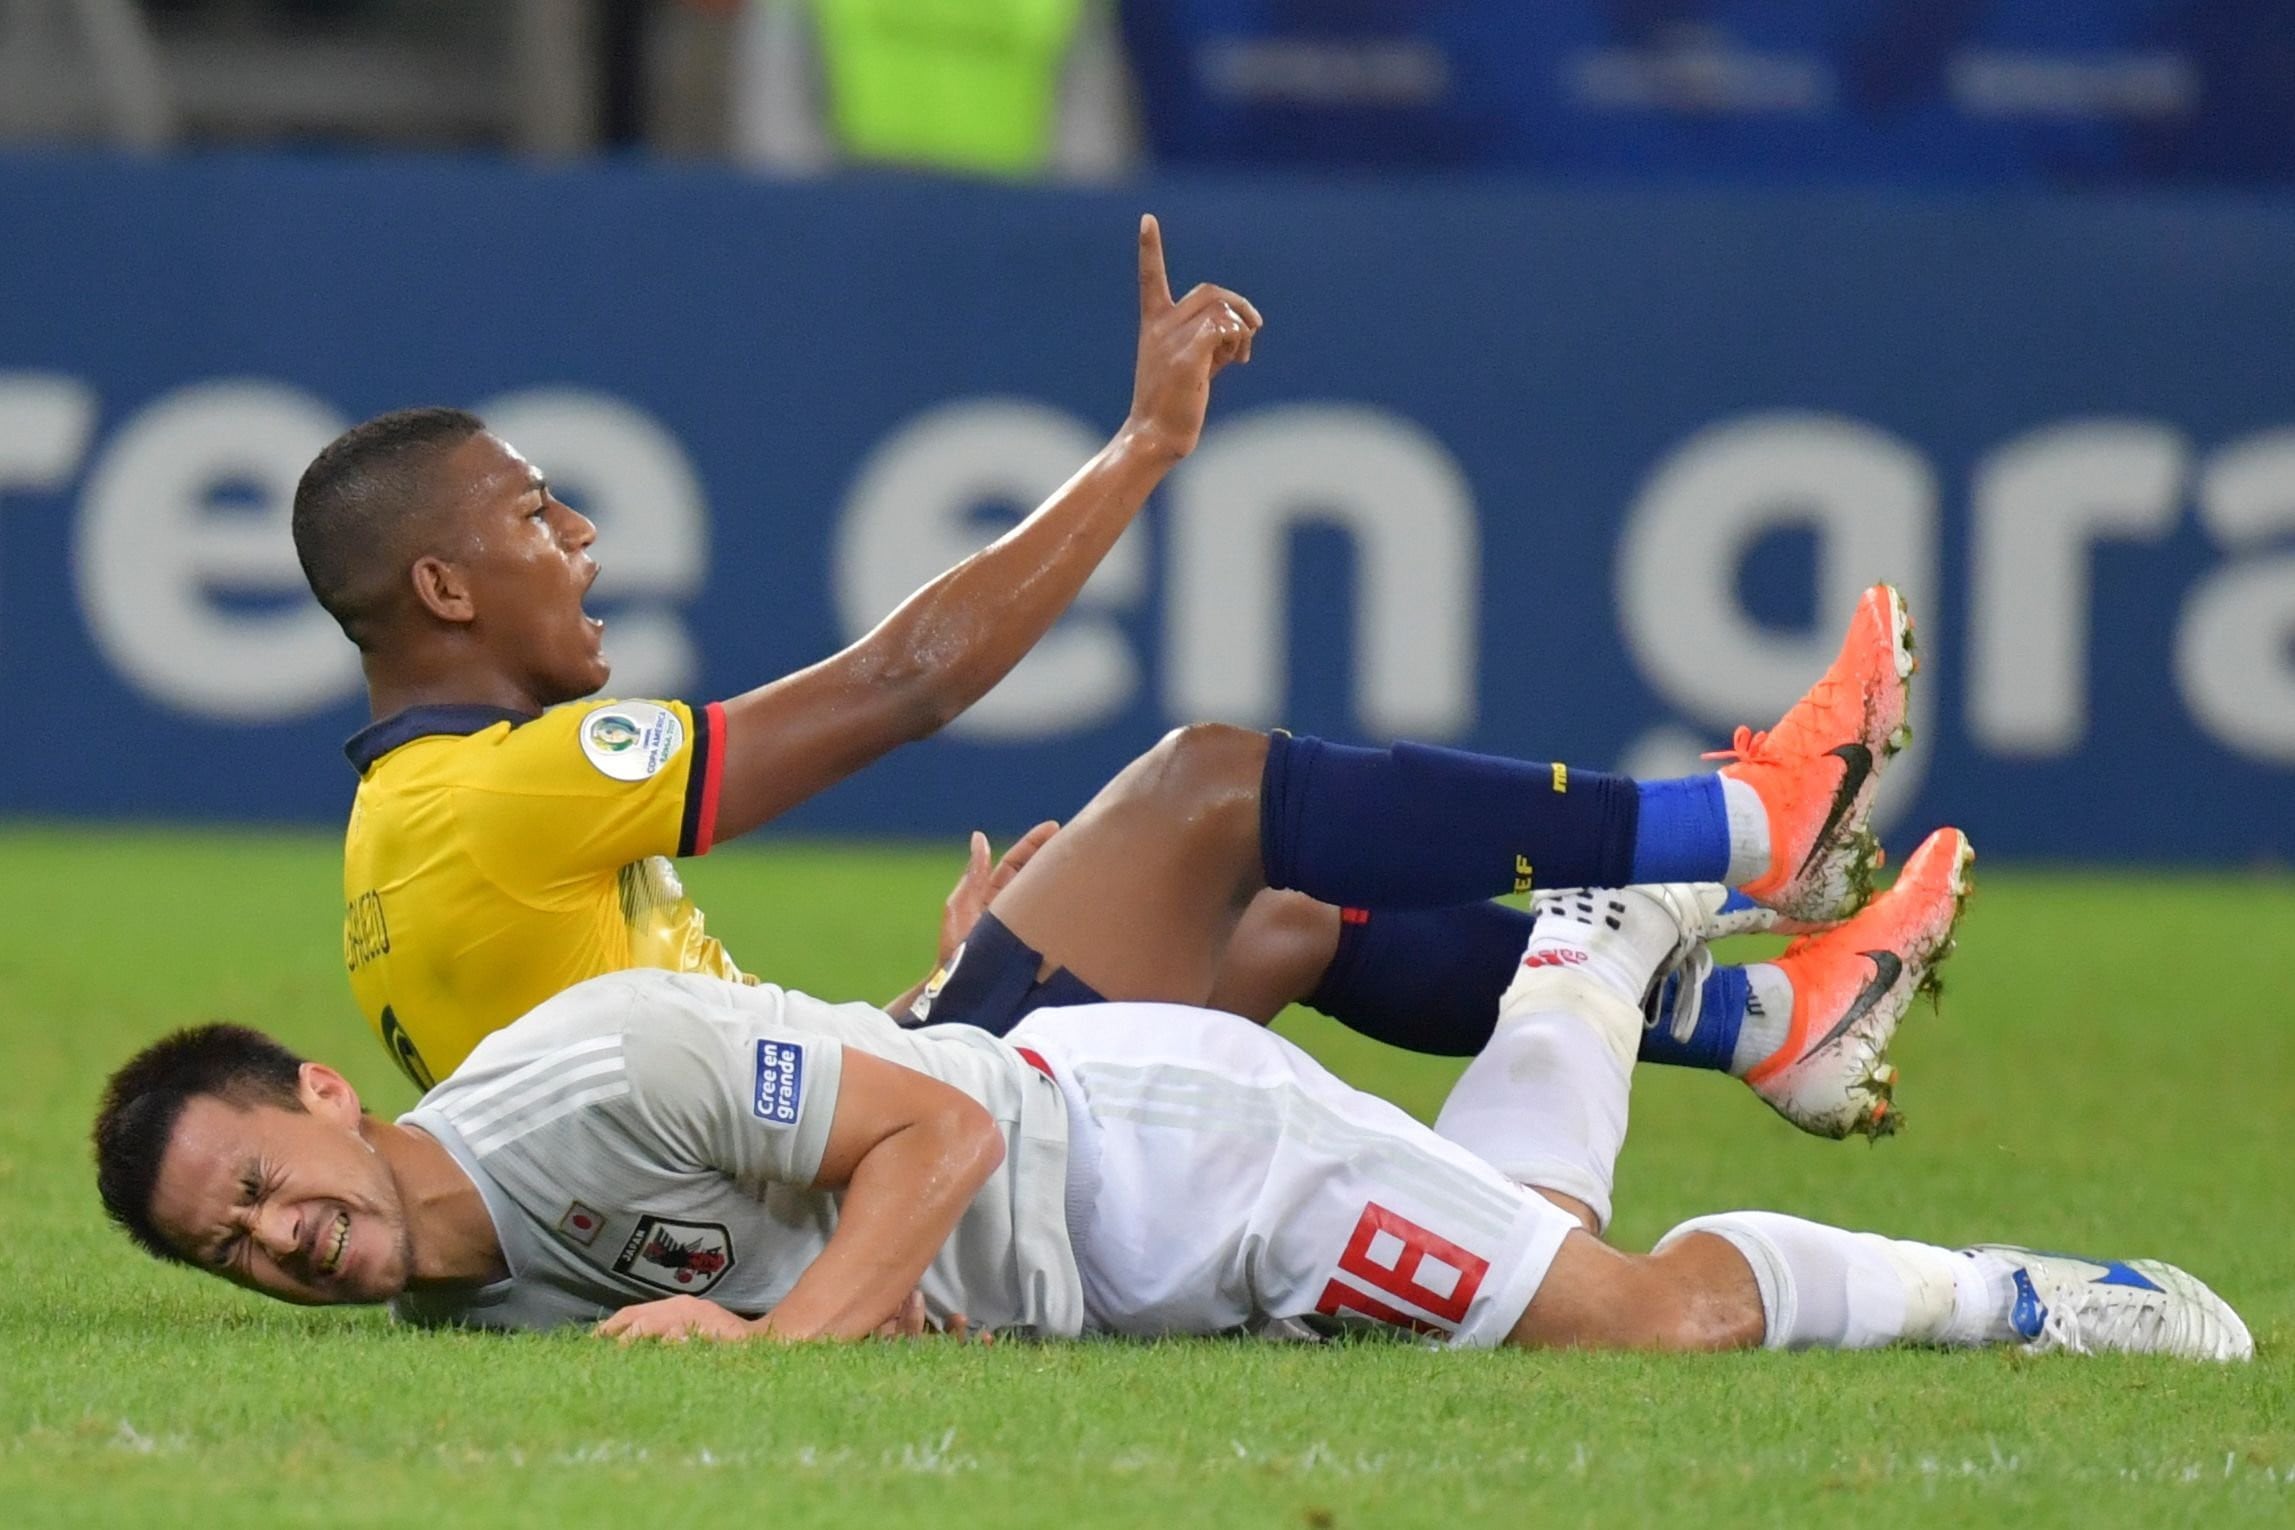 Ecuador vs Japón: EN VIVO EN DIRECTO ONLINE por la Copa América 2019